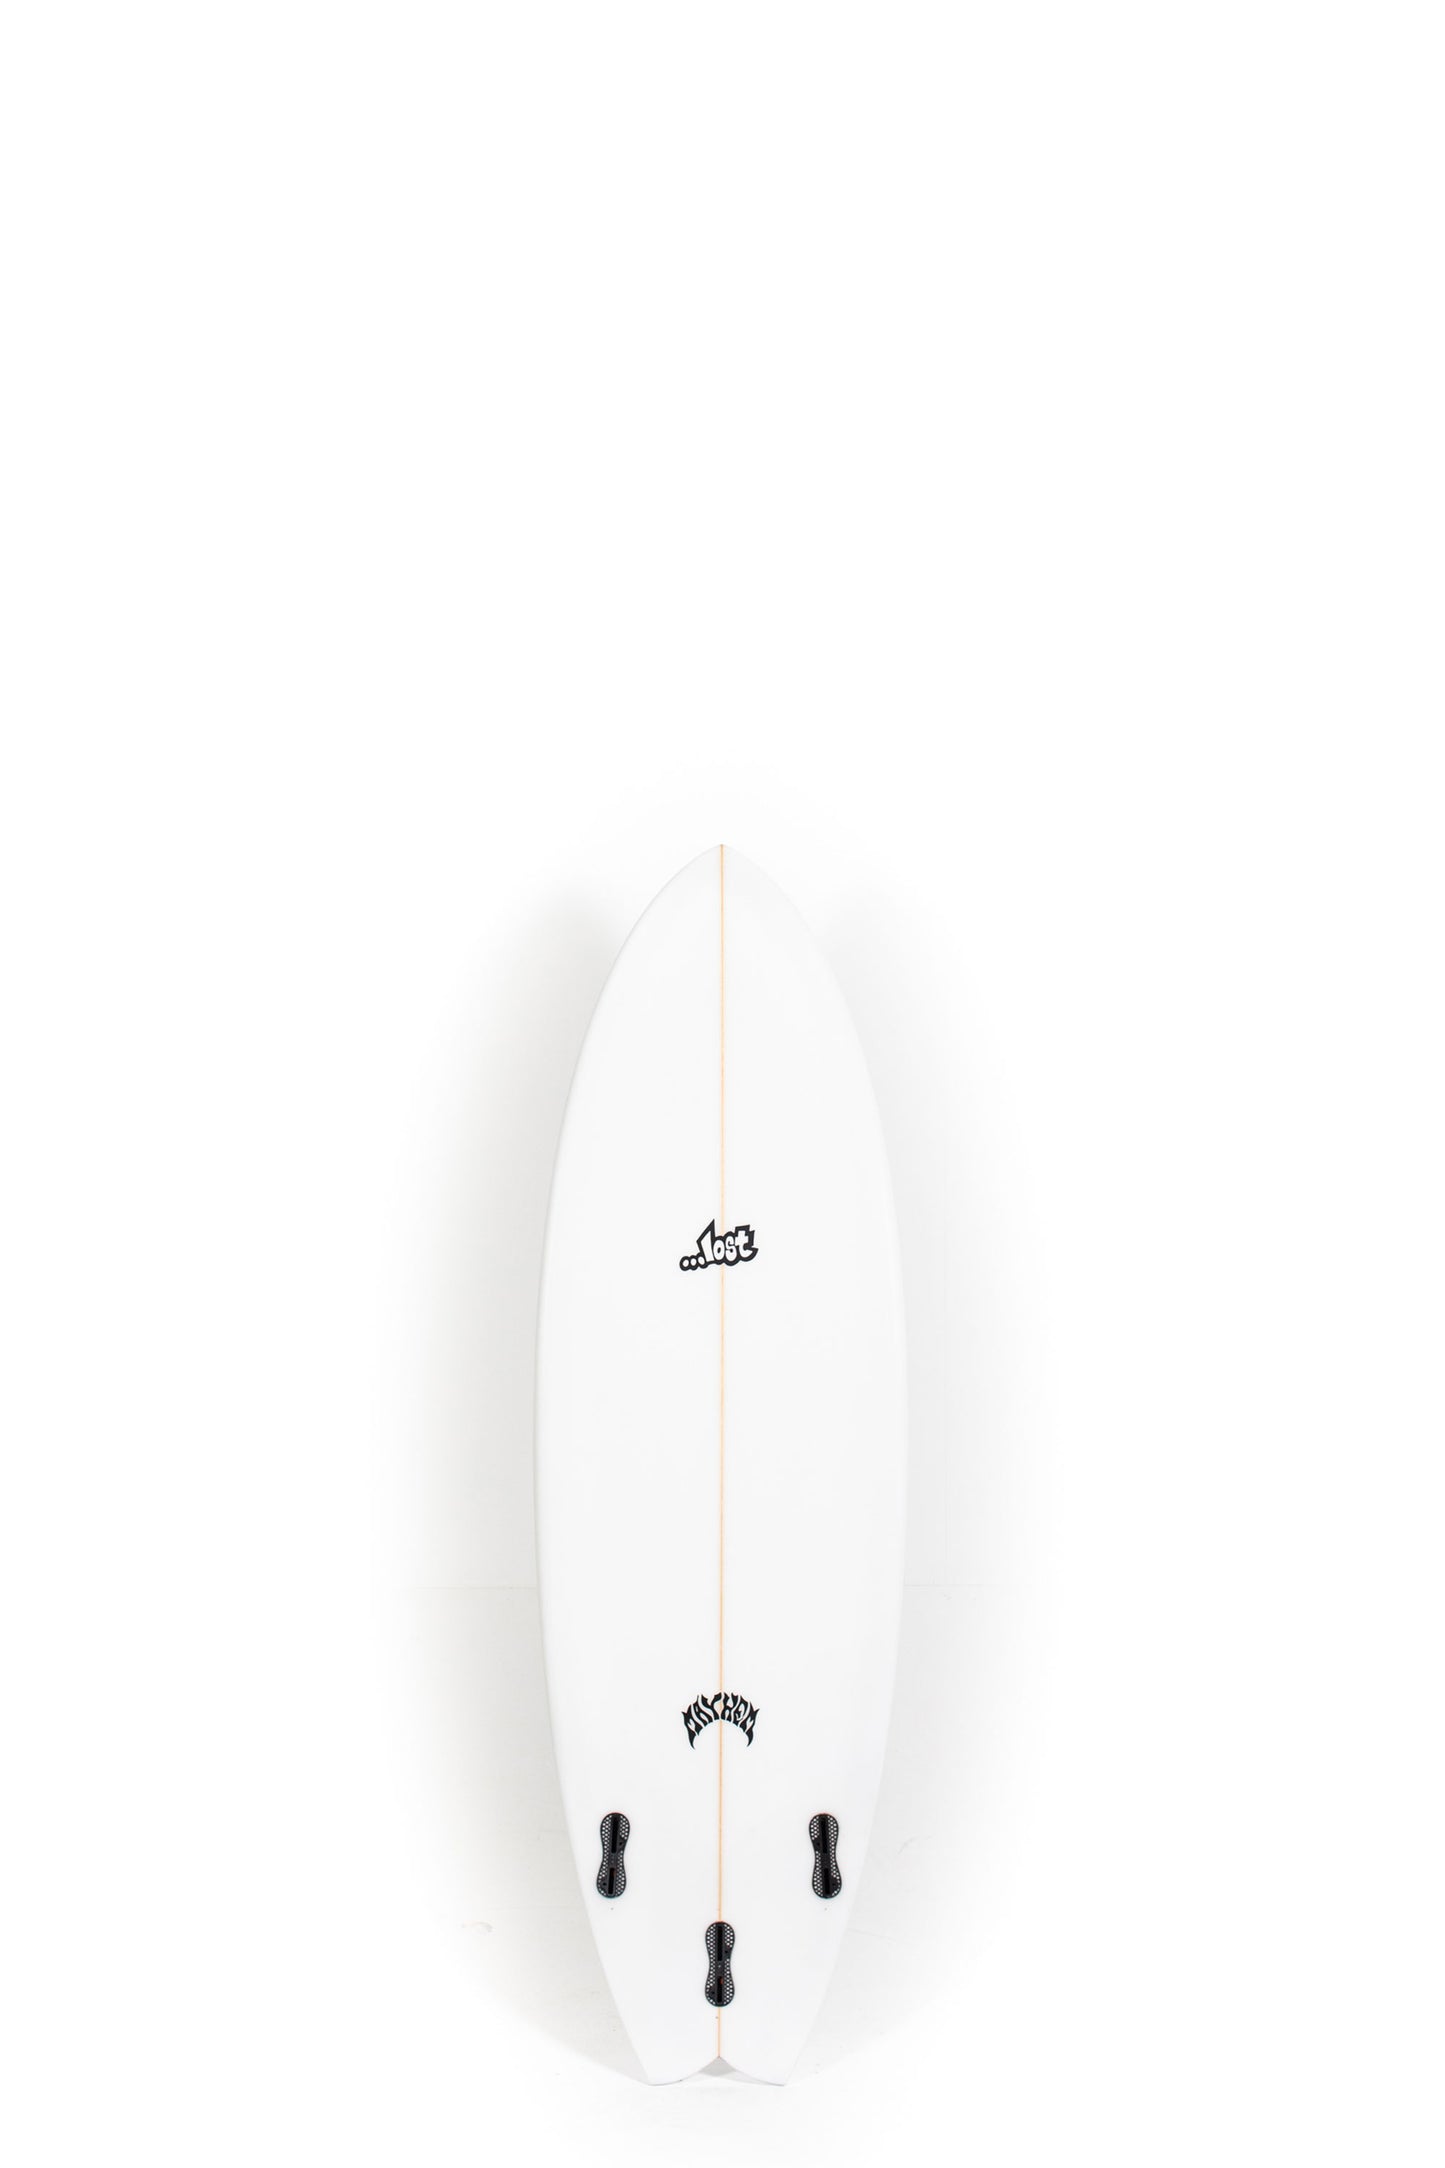 Pukas Surf Shop - Lost Surfboard - RNF '96 by Matt Biolos - 5'4"x 19.25" x 2.33 x 27,3L - MH18066